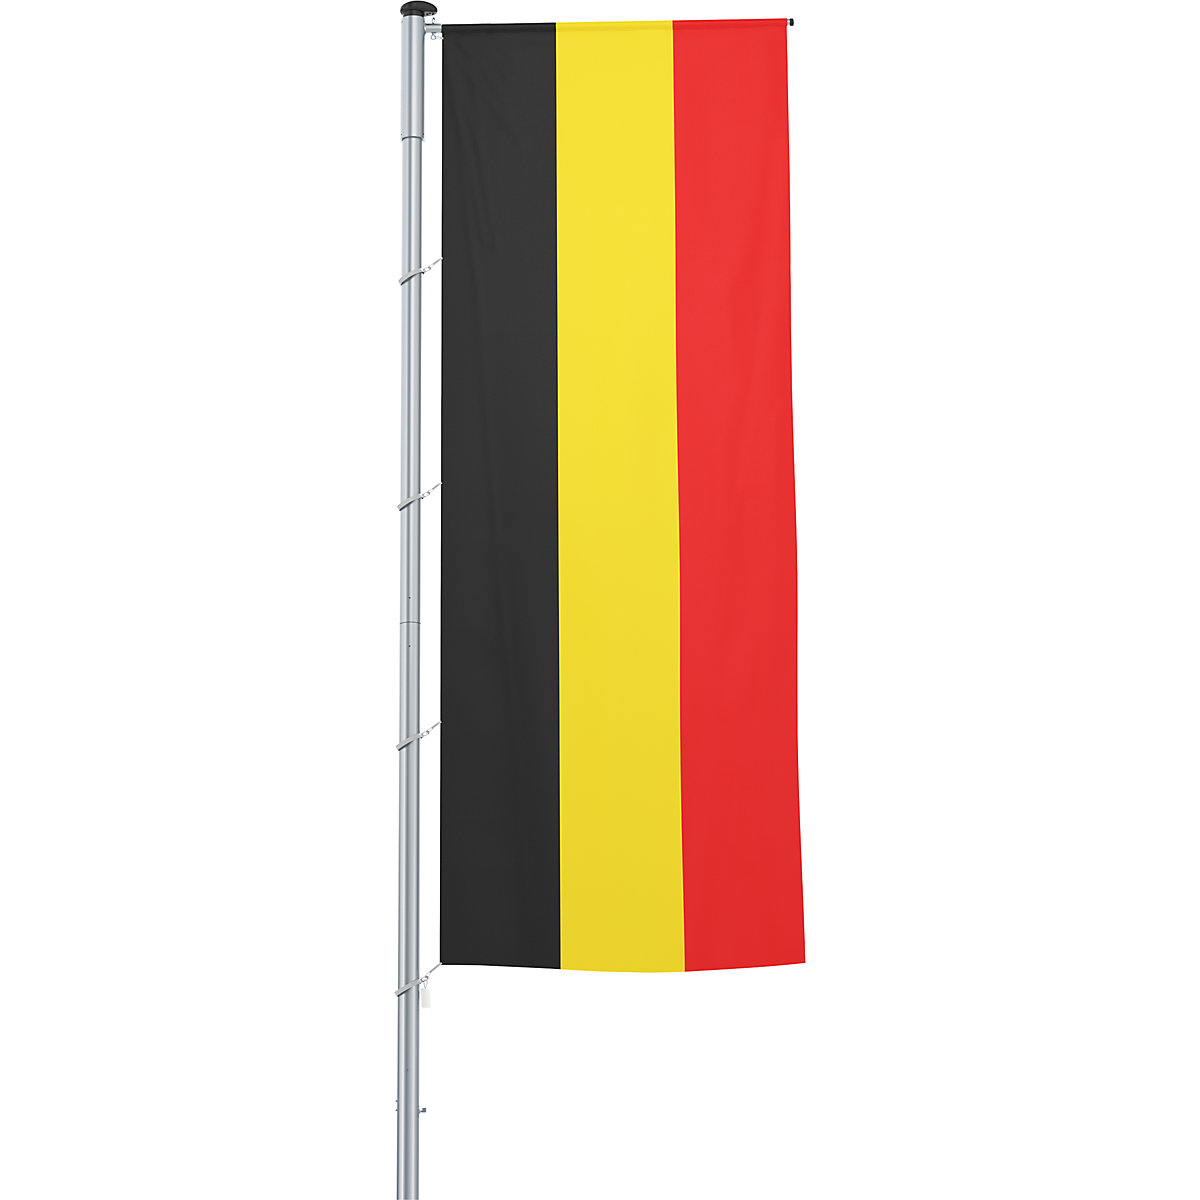 Gémes zászló/országzászló – Mannus, méret 1,2 x 3 m, Belgium-29